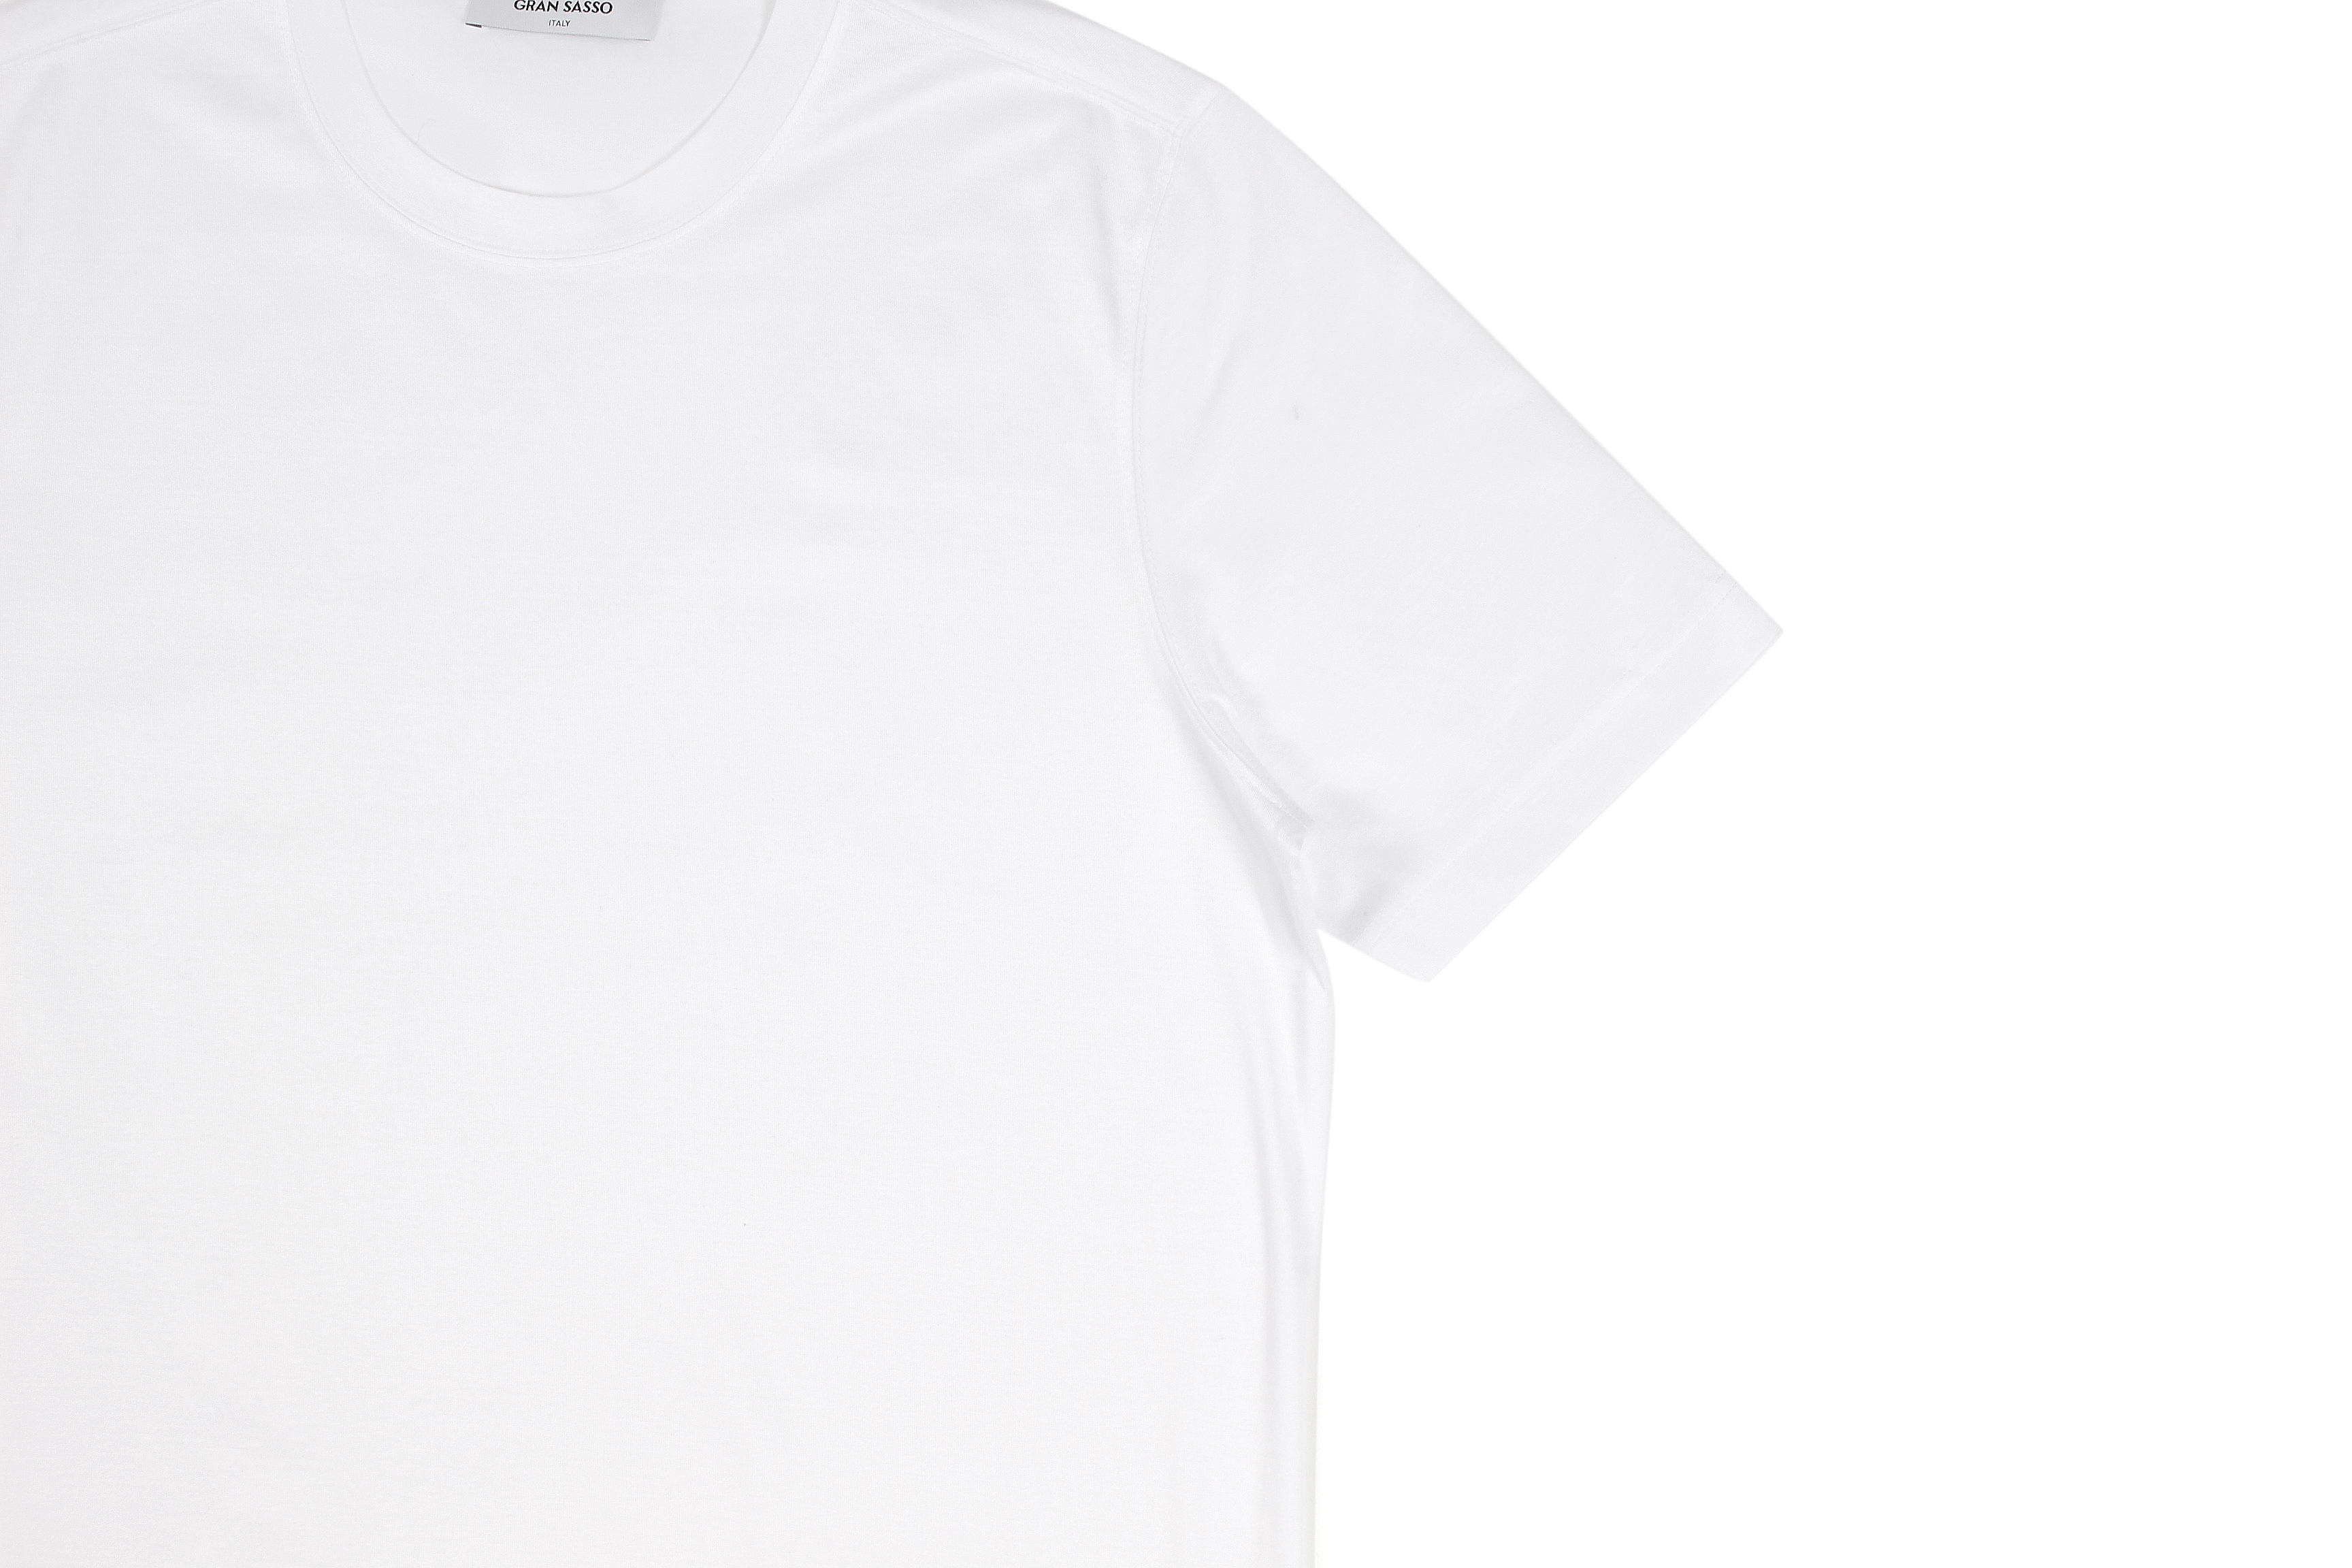 Gran Sasso (グランサッソ) Crew Neck T-shirt (クルーネック Tシャツ) Mercerised Cotton マーセライズドコットン Tシャツ WHITE (ホワイト・001) made in italy (イタリア製) 2022春夏新作 【入荷しました】【フリー分発売開始】愛知 名古屋 Alto e Diritto altoediritto アルトエデリット